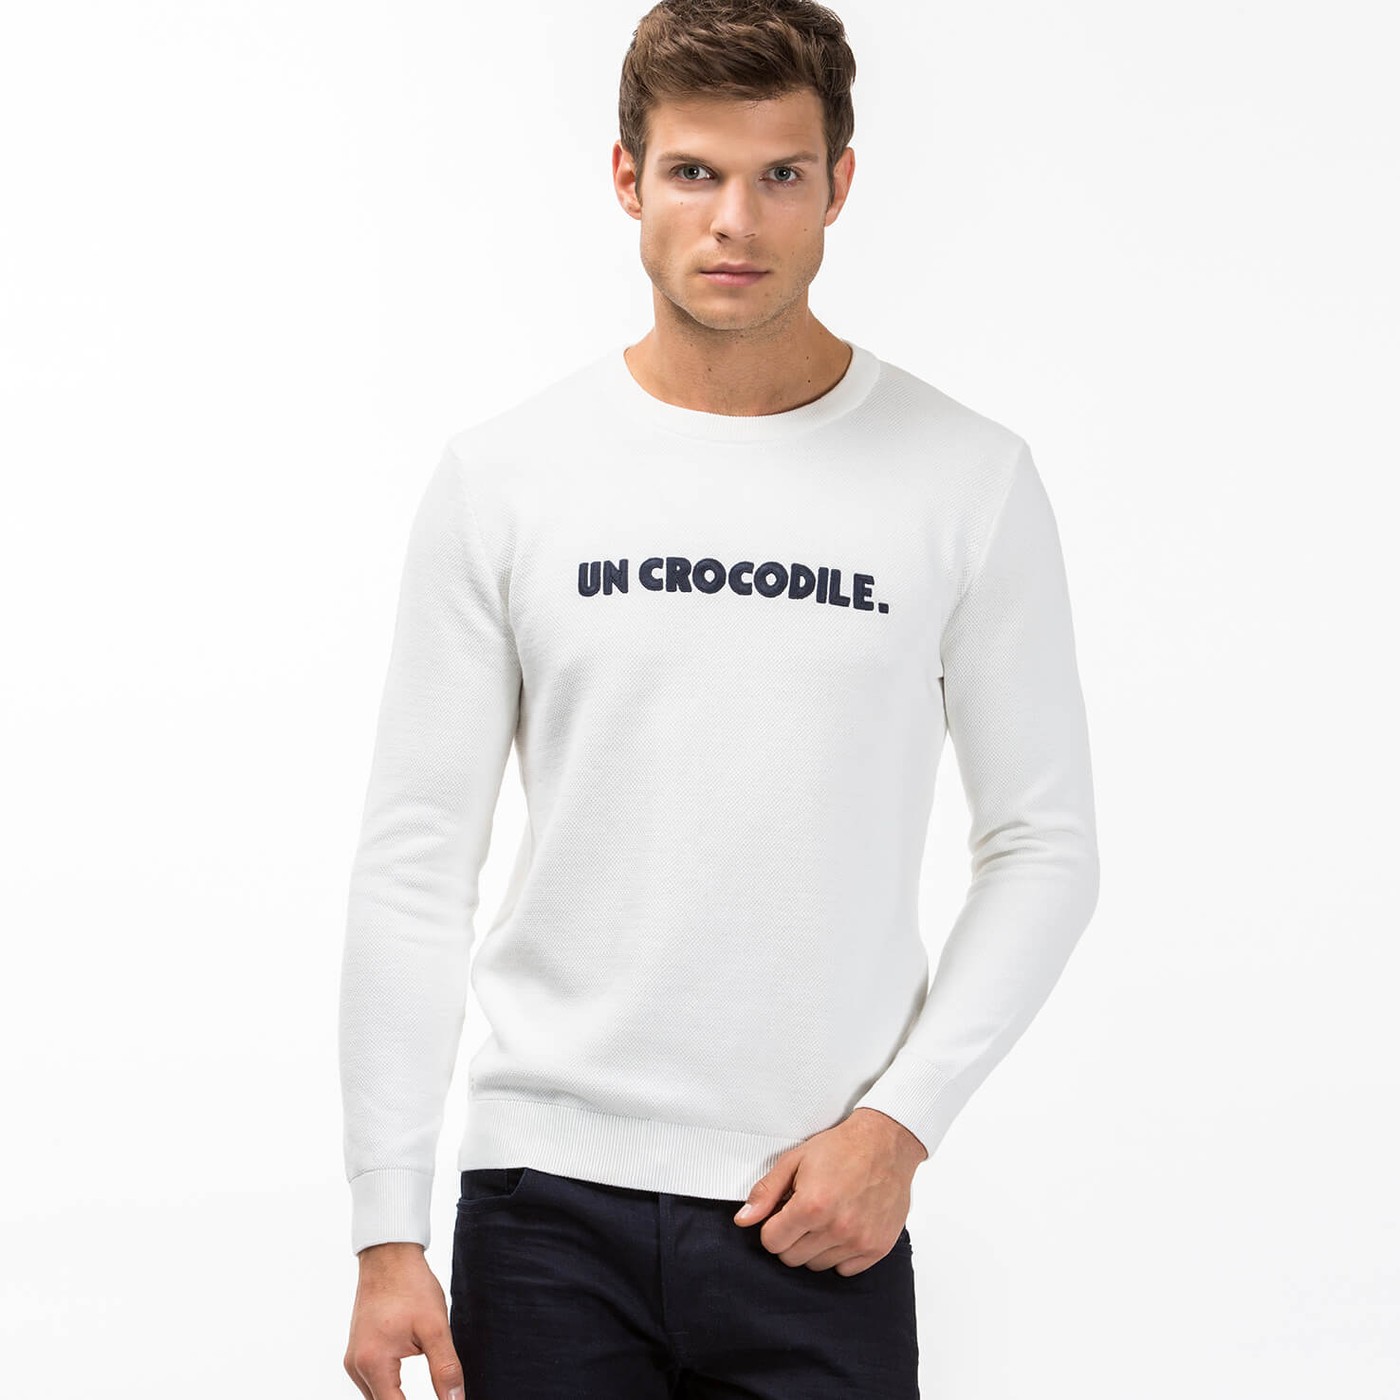 un crocodile sweater, OFF 74%,Buy!